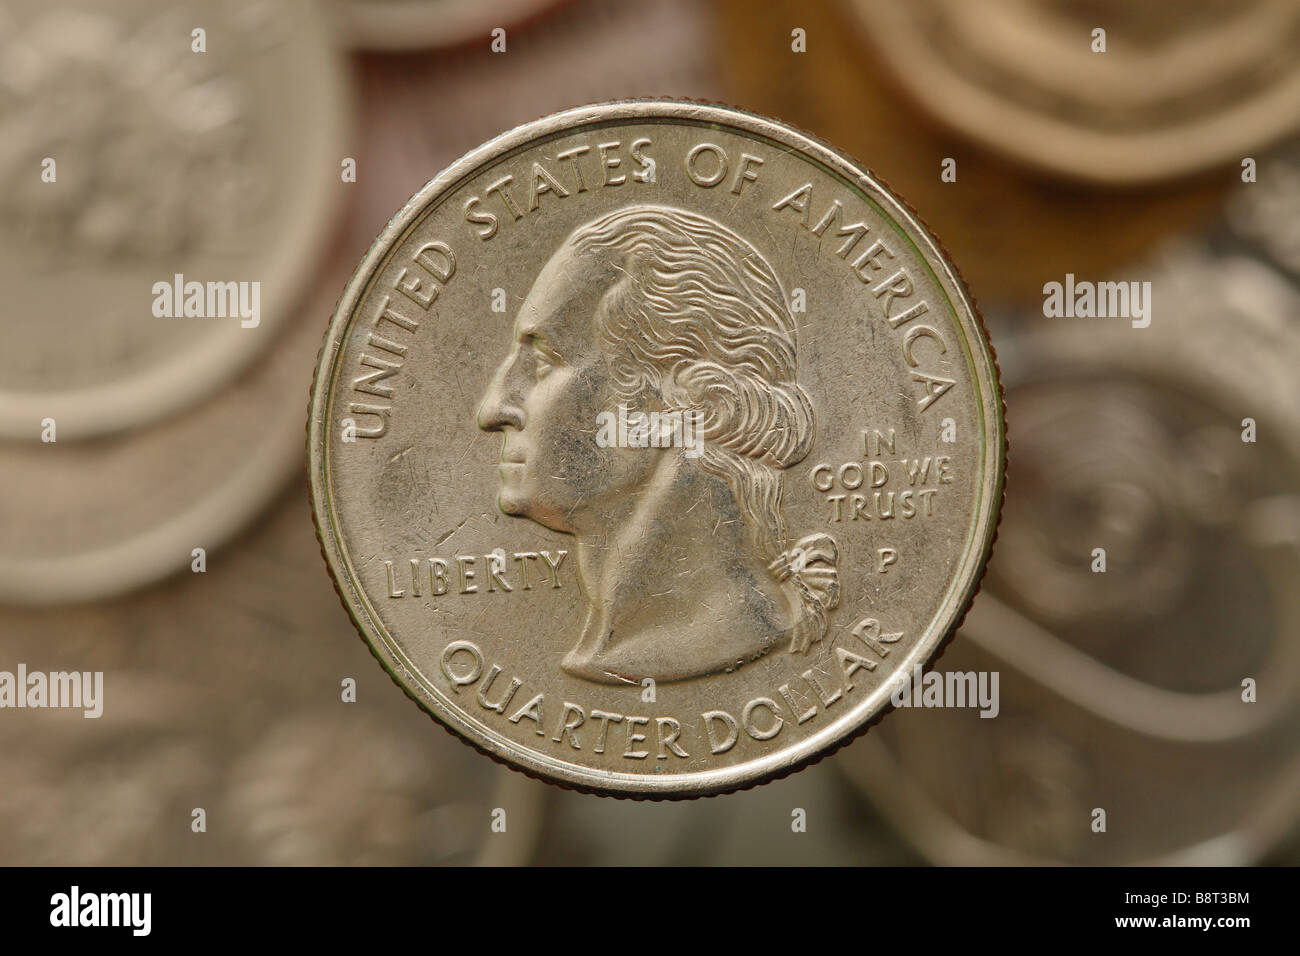 Noi American 25 centesimi Quarto di Dollaro moneta che mostra la frase libertà e In God We Trust Foto Stock